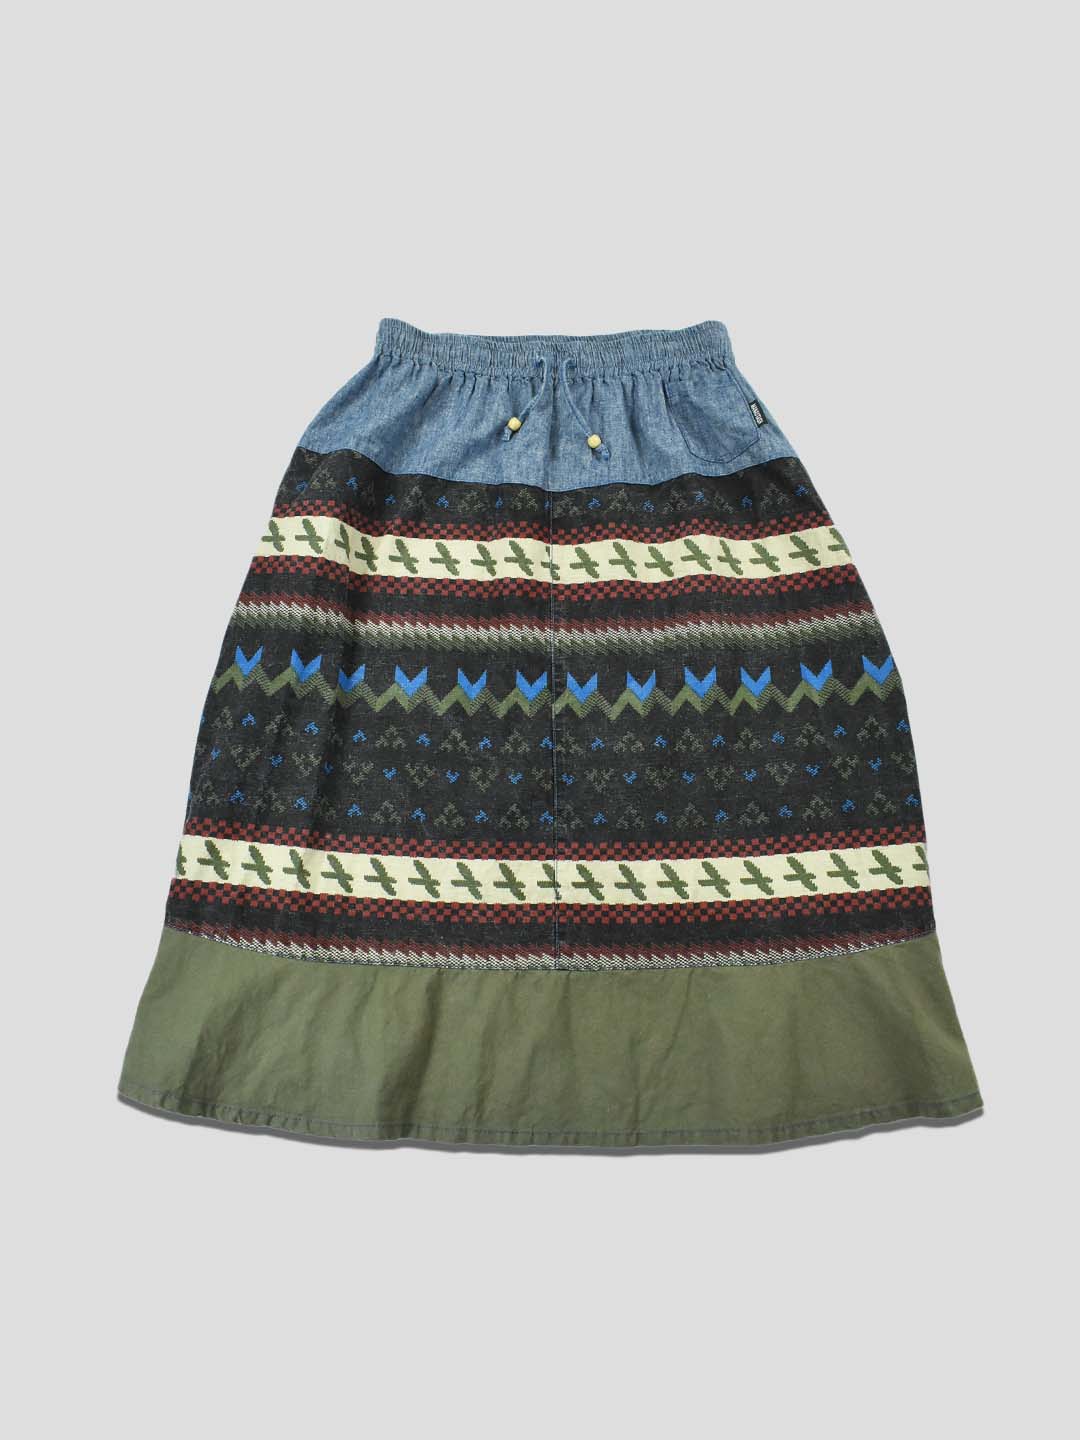 Native Pattern Chambray/Hemp Skirt